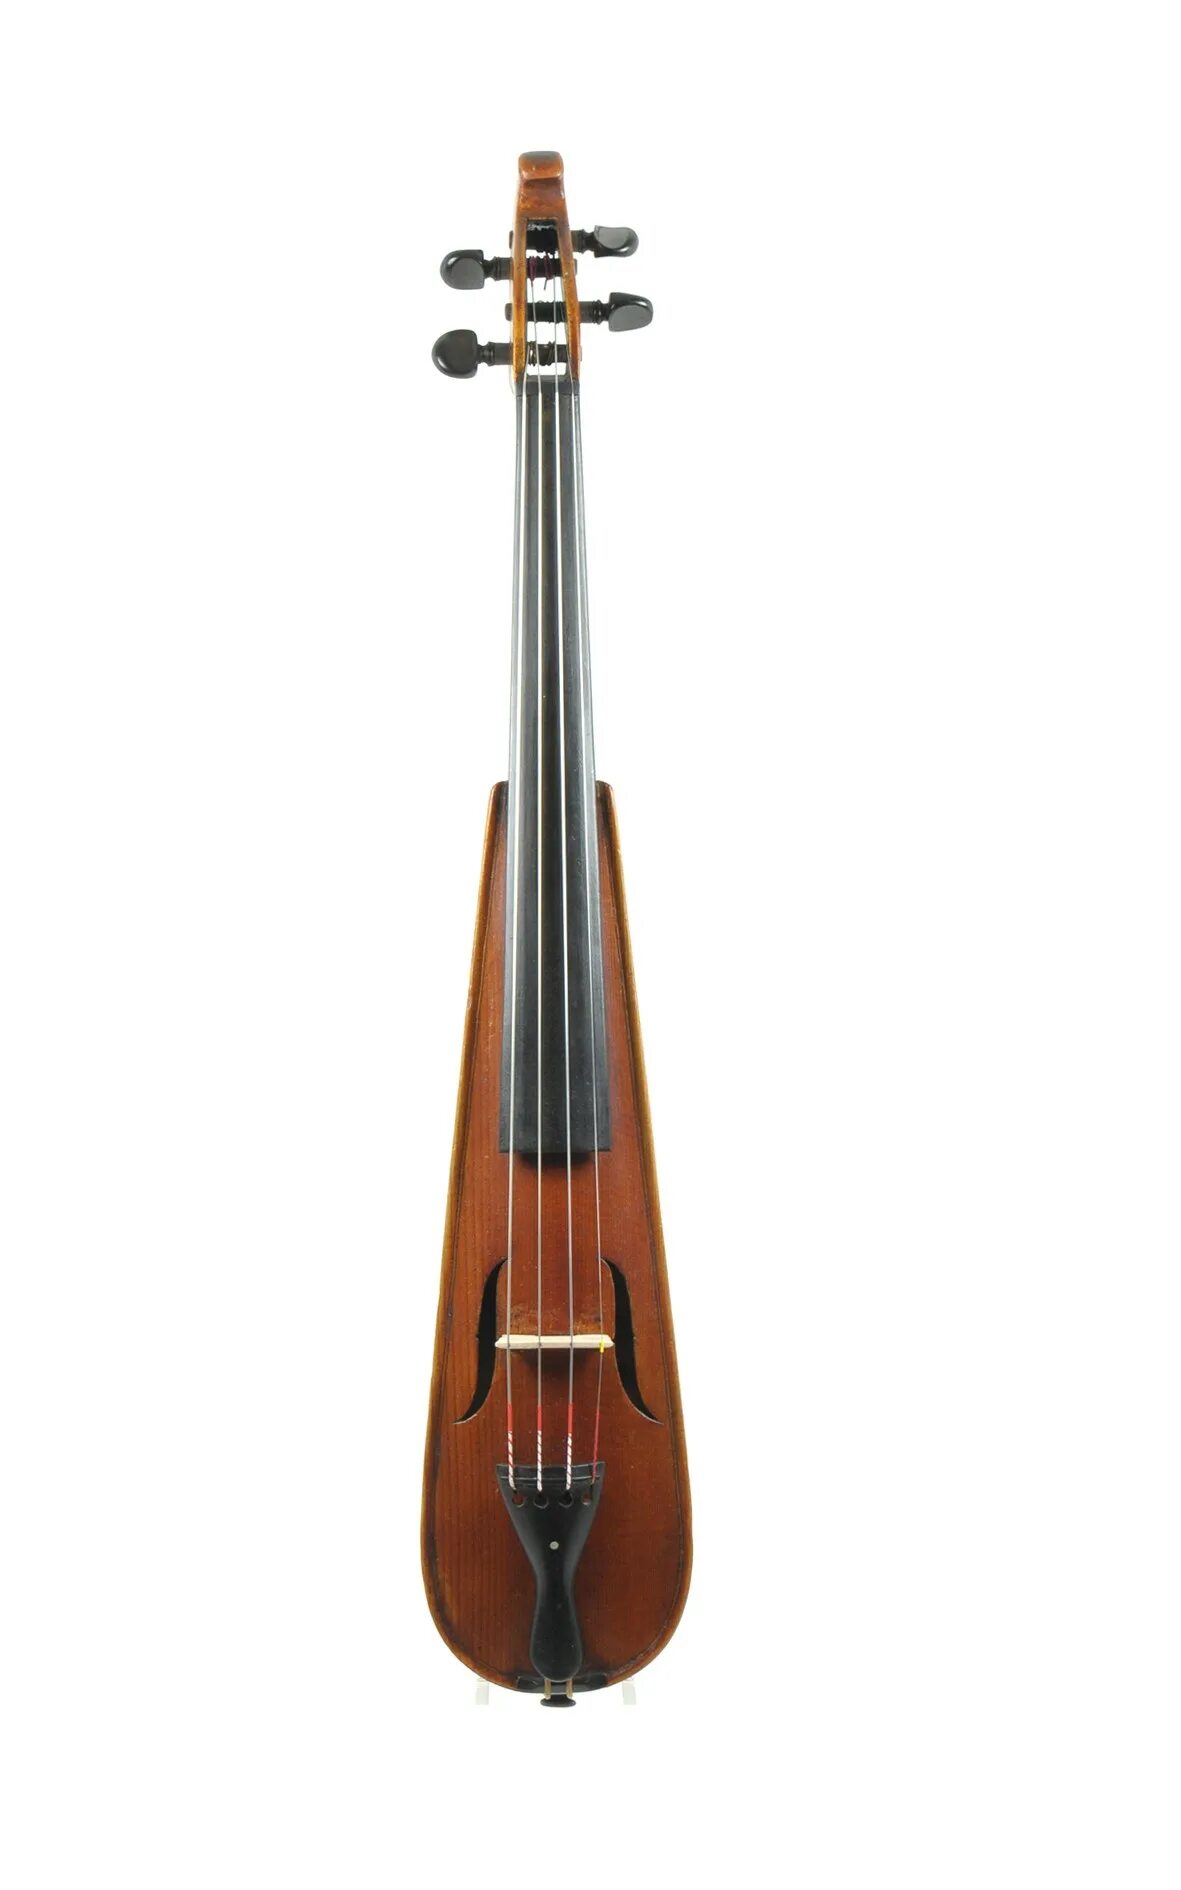 Длинная скрипка. Пошетта музыкальный инструмент. Pochette Violin. Скрипка пошетта. Пошетта струнные смычковые музыкальные инструменты.